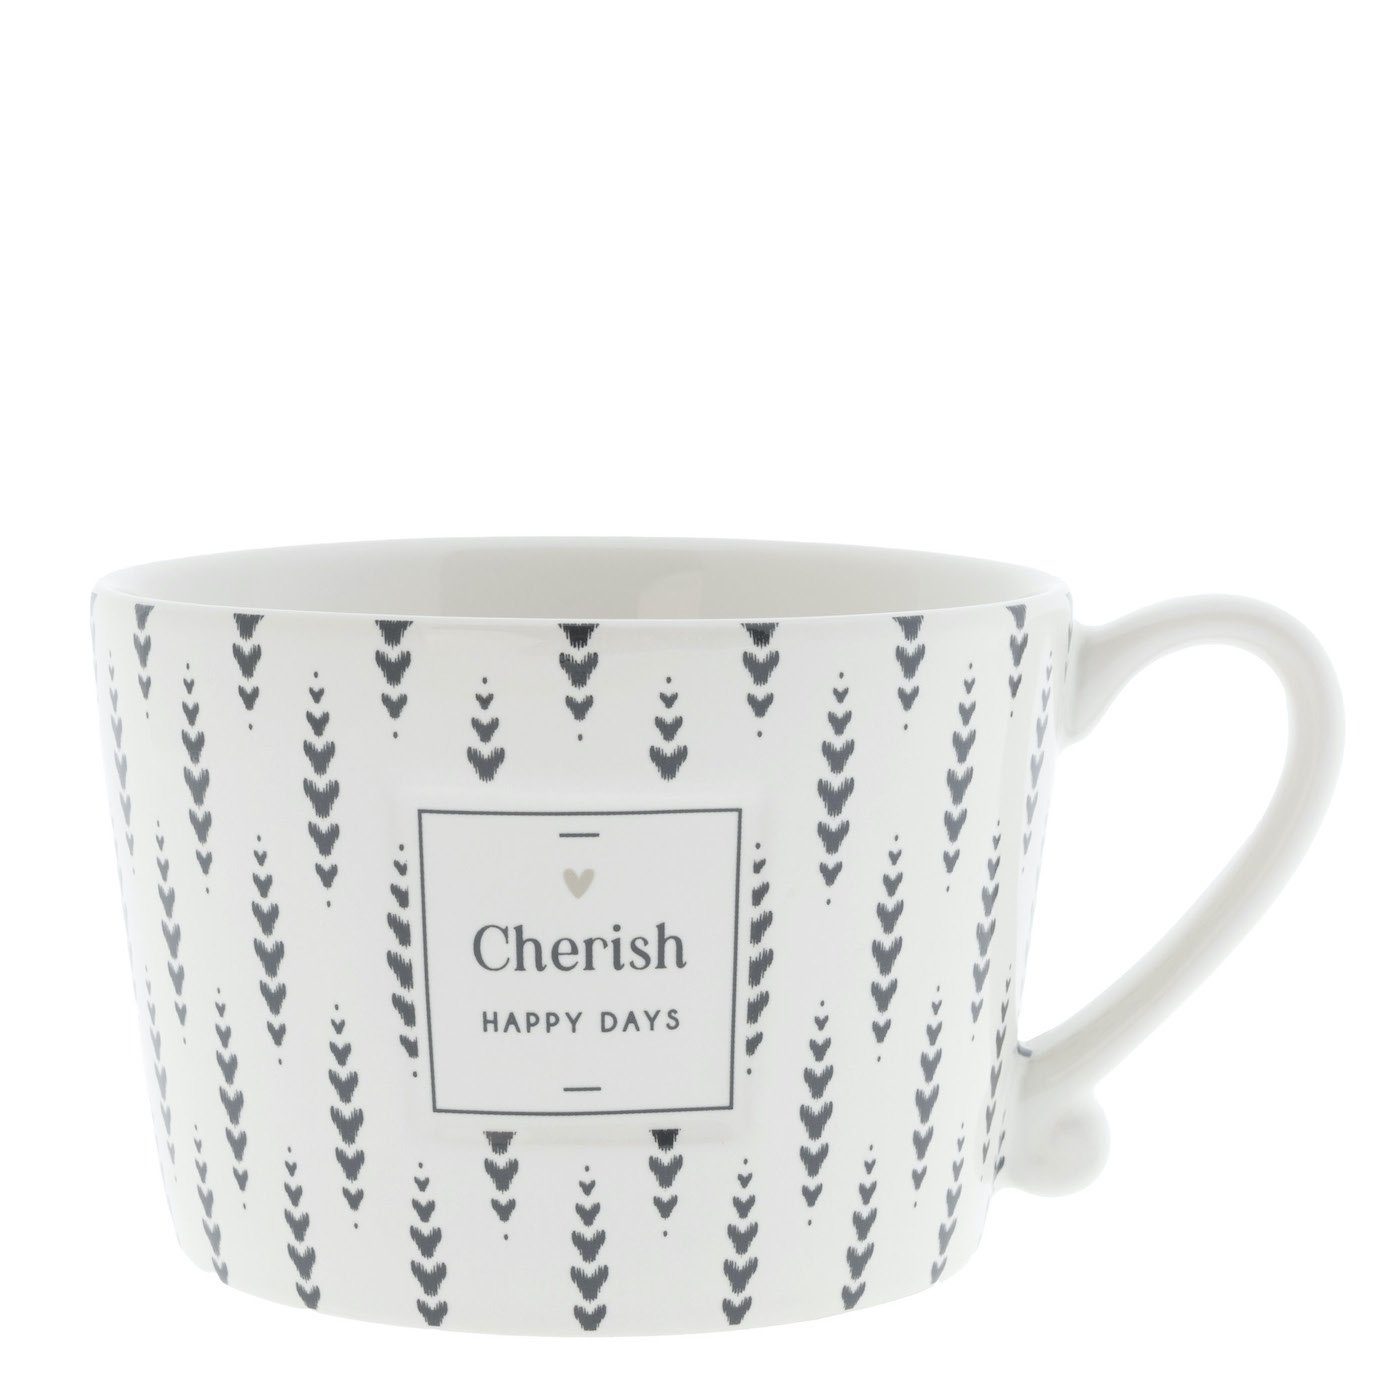 Cherish Tasse Bastion Henkel DAYS mit Keramik Collections Tasse weiß schwarz, Keramik HAPPY